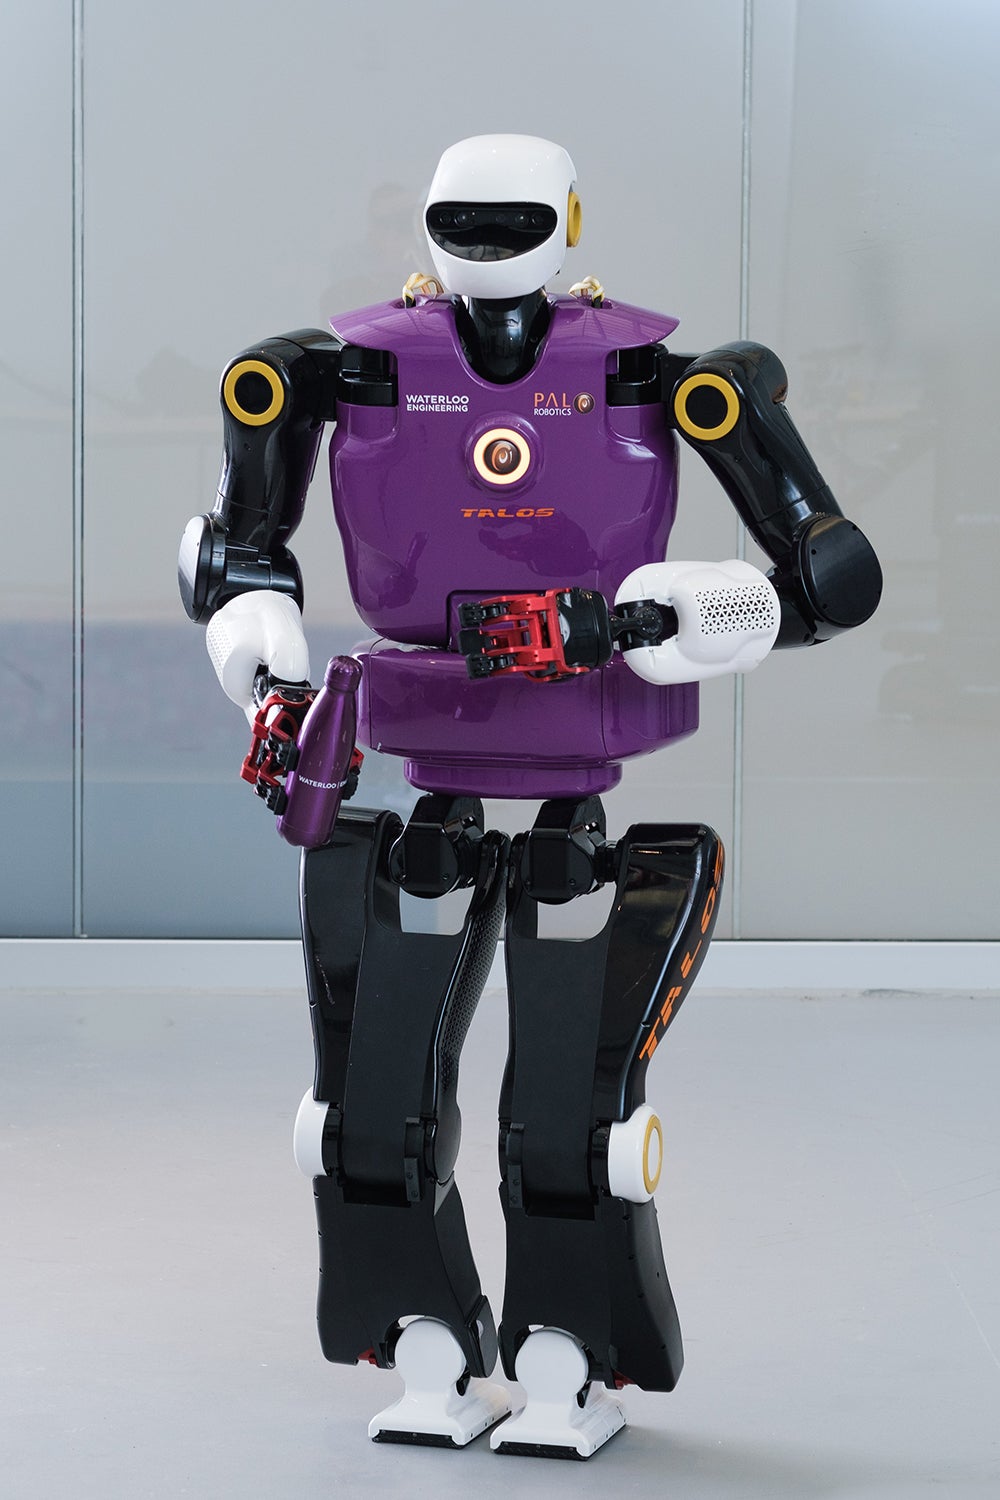 TALOS Robot UWaterloo RoboHub